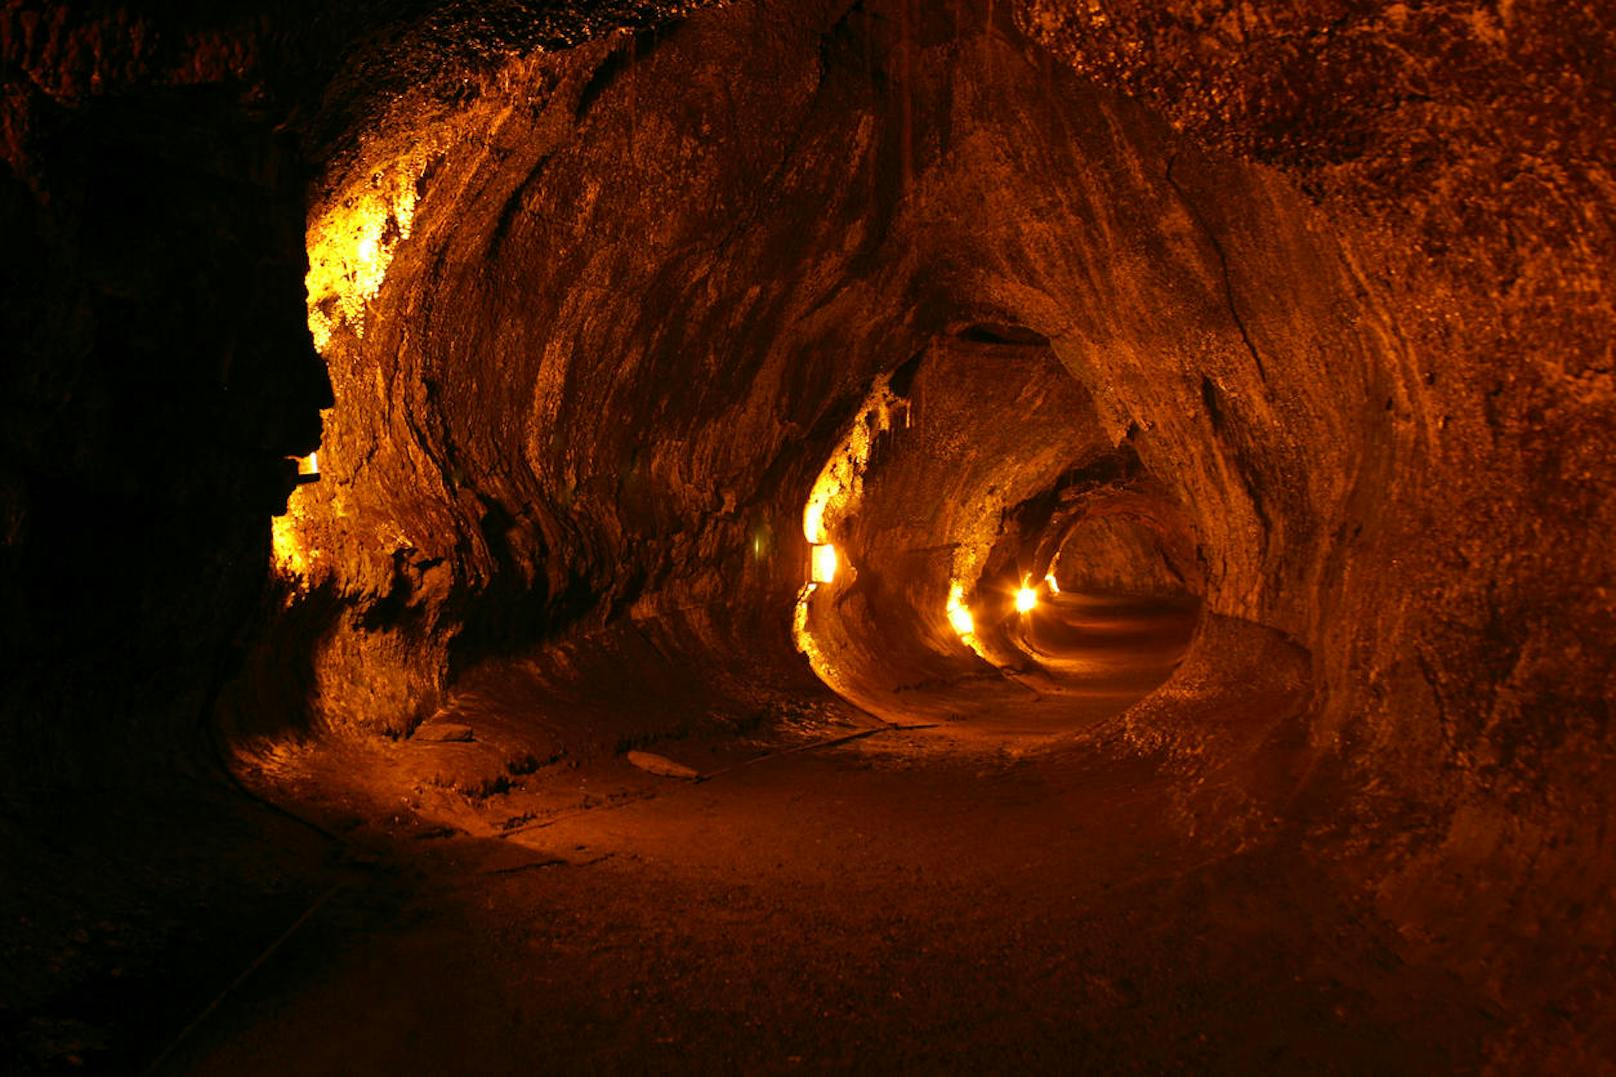 <b>Hawaii Volcanoes National Park - Hawaii, USA</b>
Die Höhlen im Hawaii Volcanoes National Park sind Lava-Tunnel, geformt als die Vulkane der Region ausbrachen und die ausgetretene Lava abkühlte. Die einzigartige Atmosphäre dort ist kaum vergleichbar mit anderen Höhlensystemen.